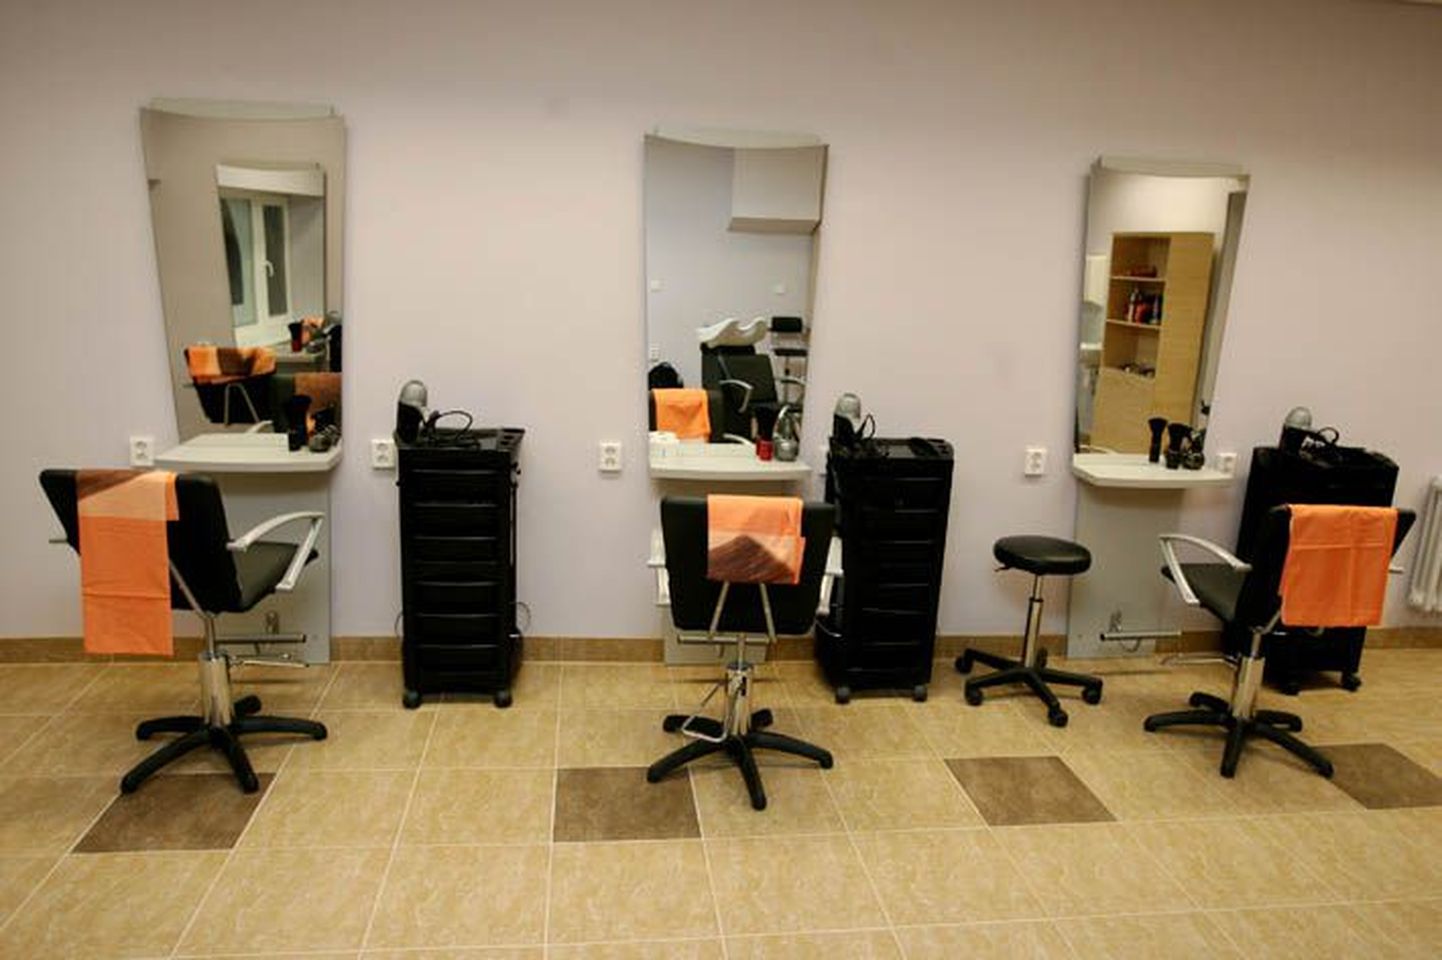 Kuigi potentsiaalsetel klientidel on valida mitme juuksuritooli ja salongi vahel, ei kiputa kliendi võitmiseks teenuste hinda alandama.